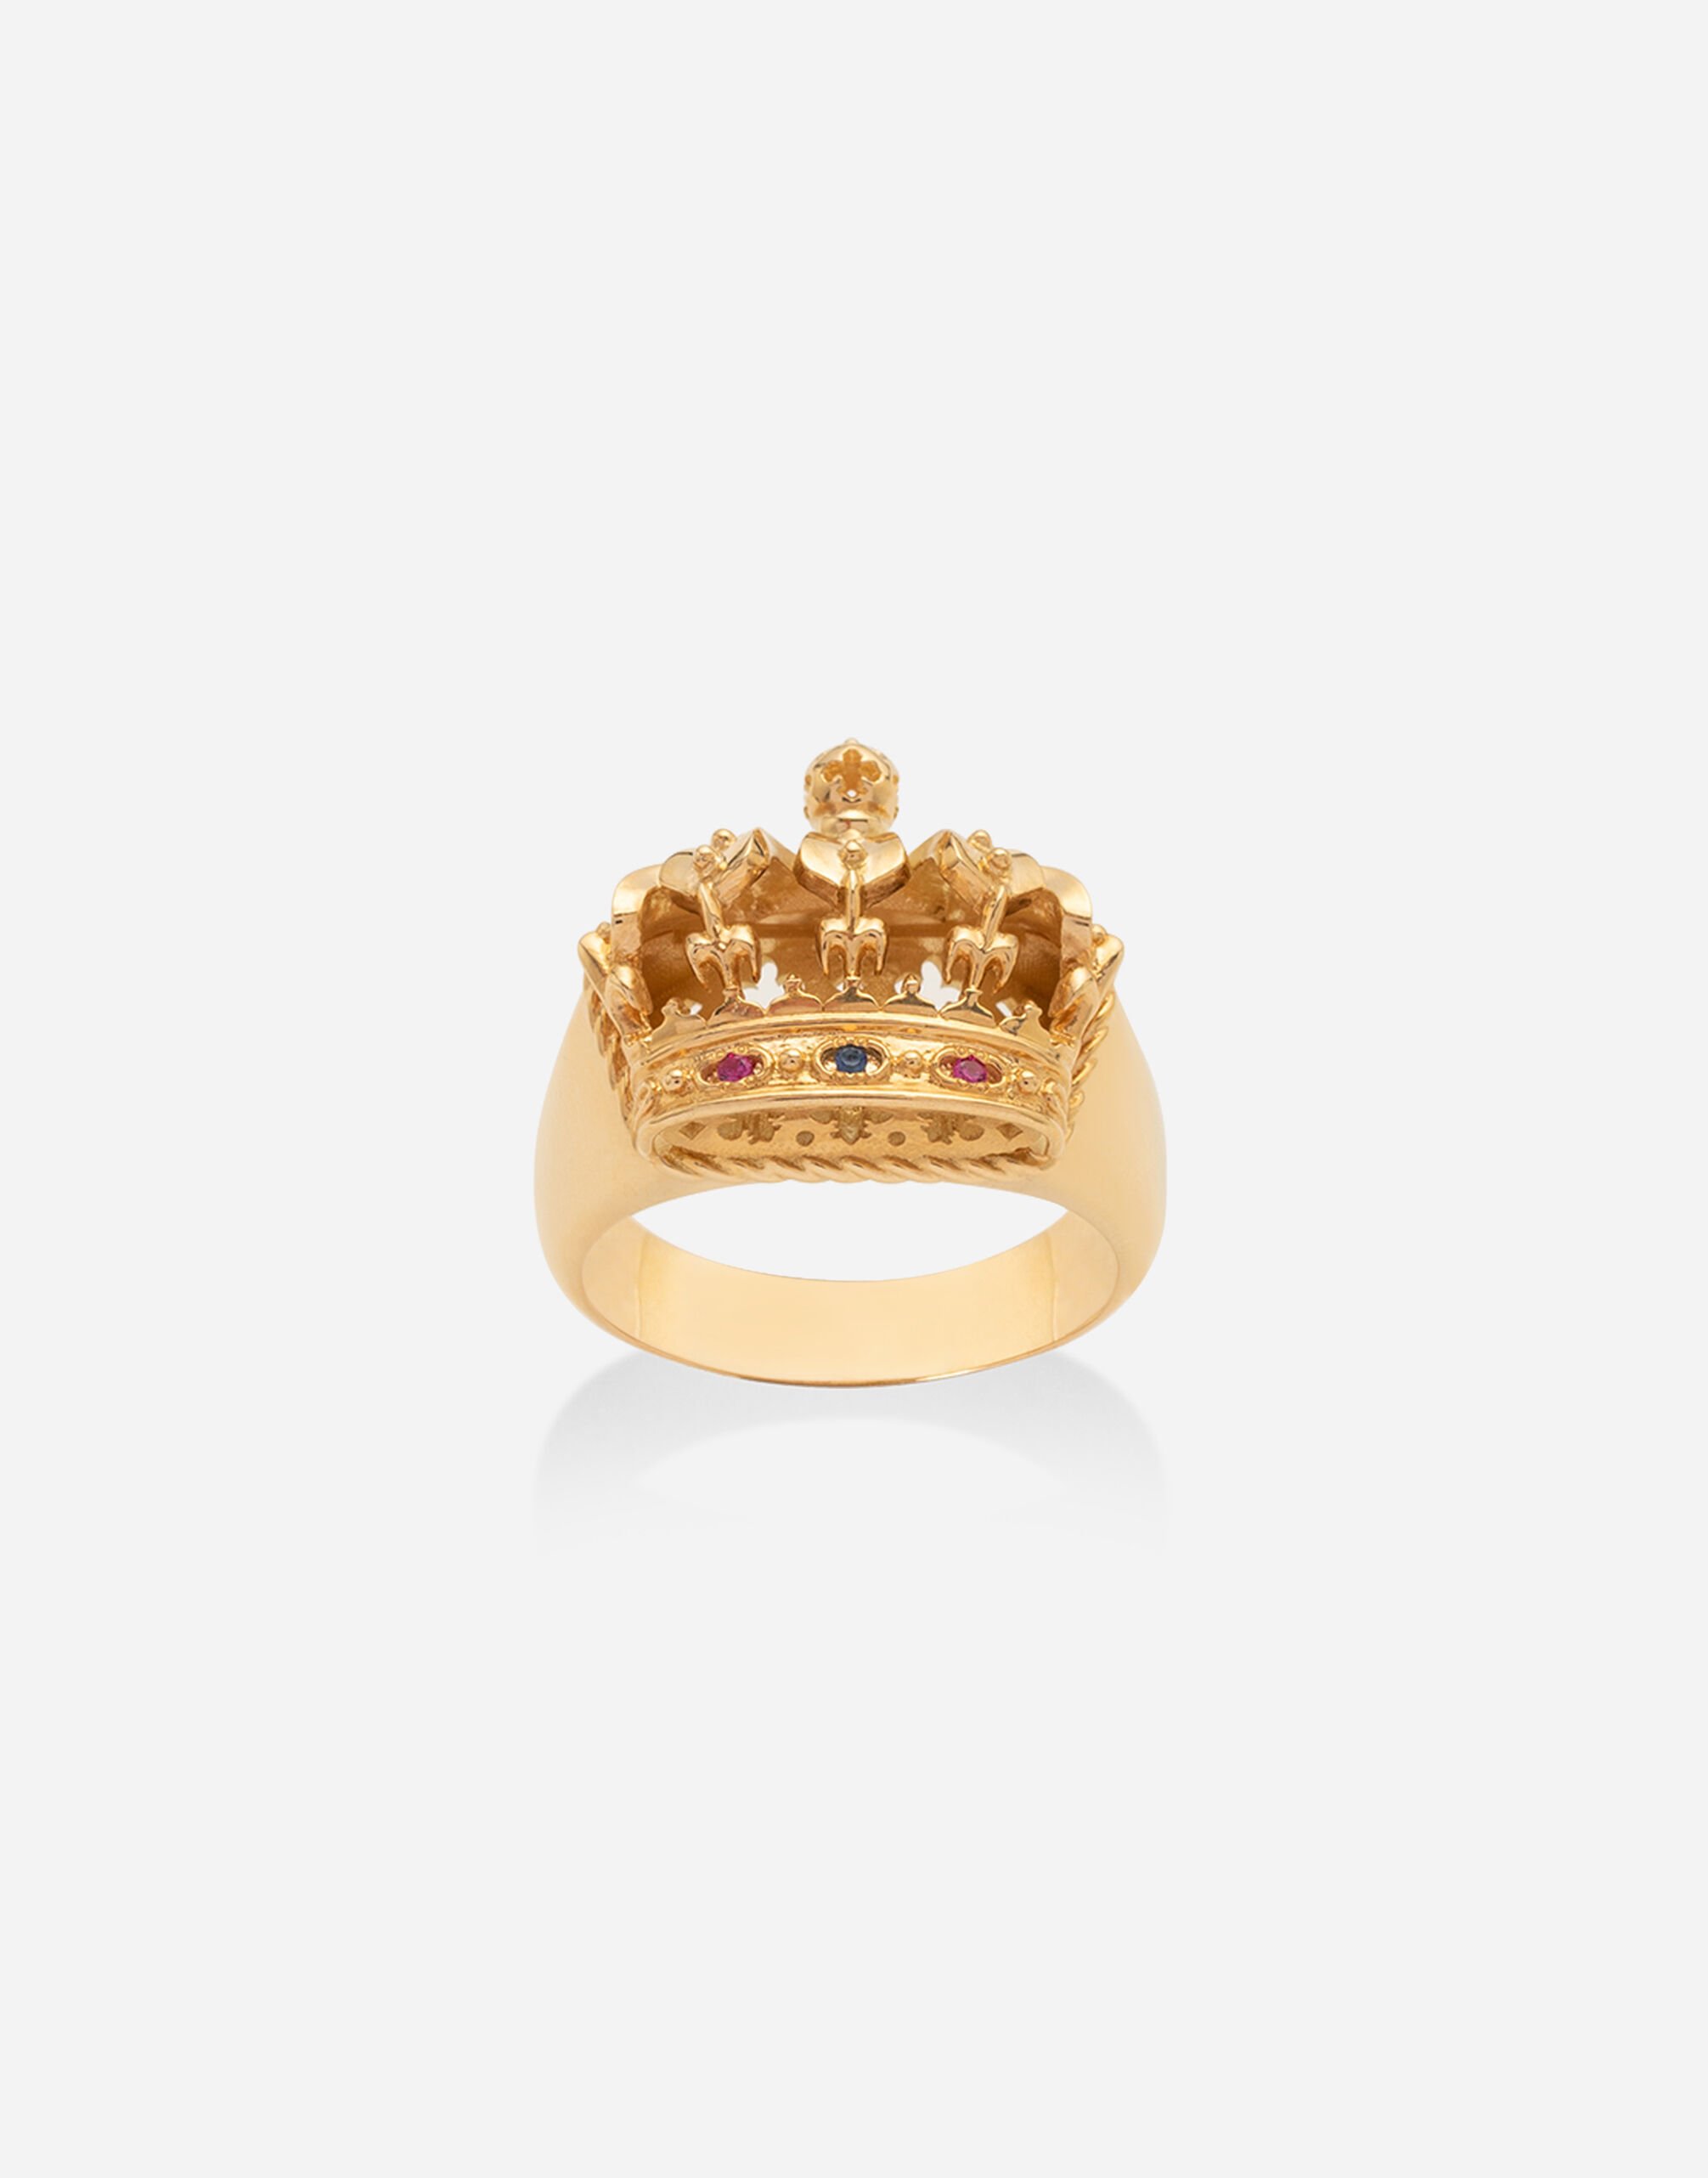 Dolce & Gabbana Anillo Crown con corona en oro amarillo, rubíes y zafiro Dorado WRLK1GWIE01